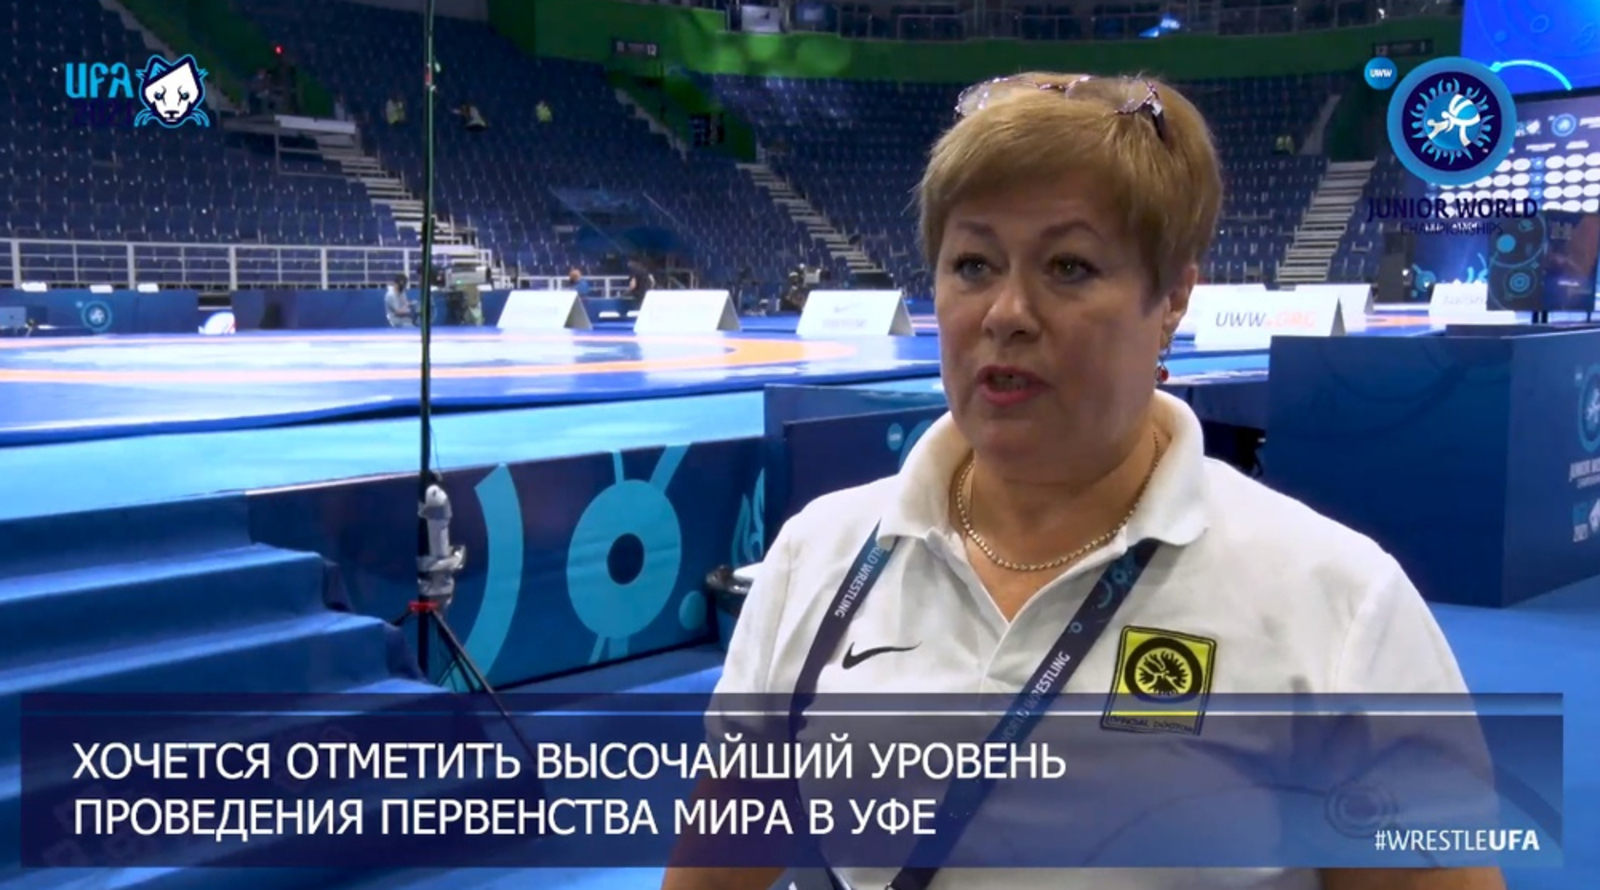 Ирина Дулепова отметила высочайший уровень проведения чемпионата мира по борьбе в Уфе